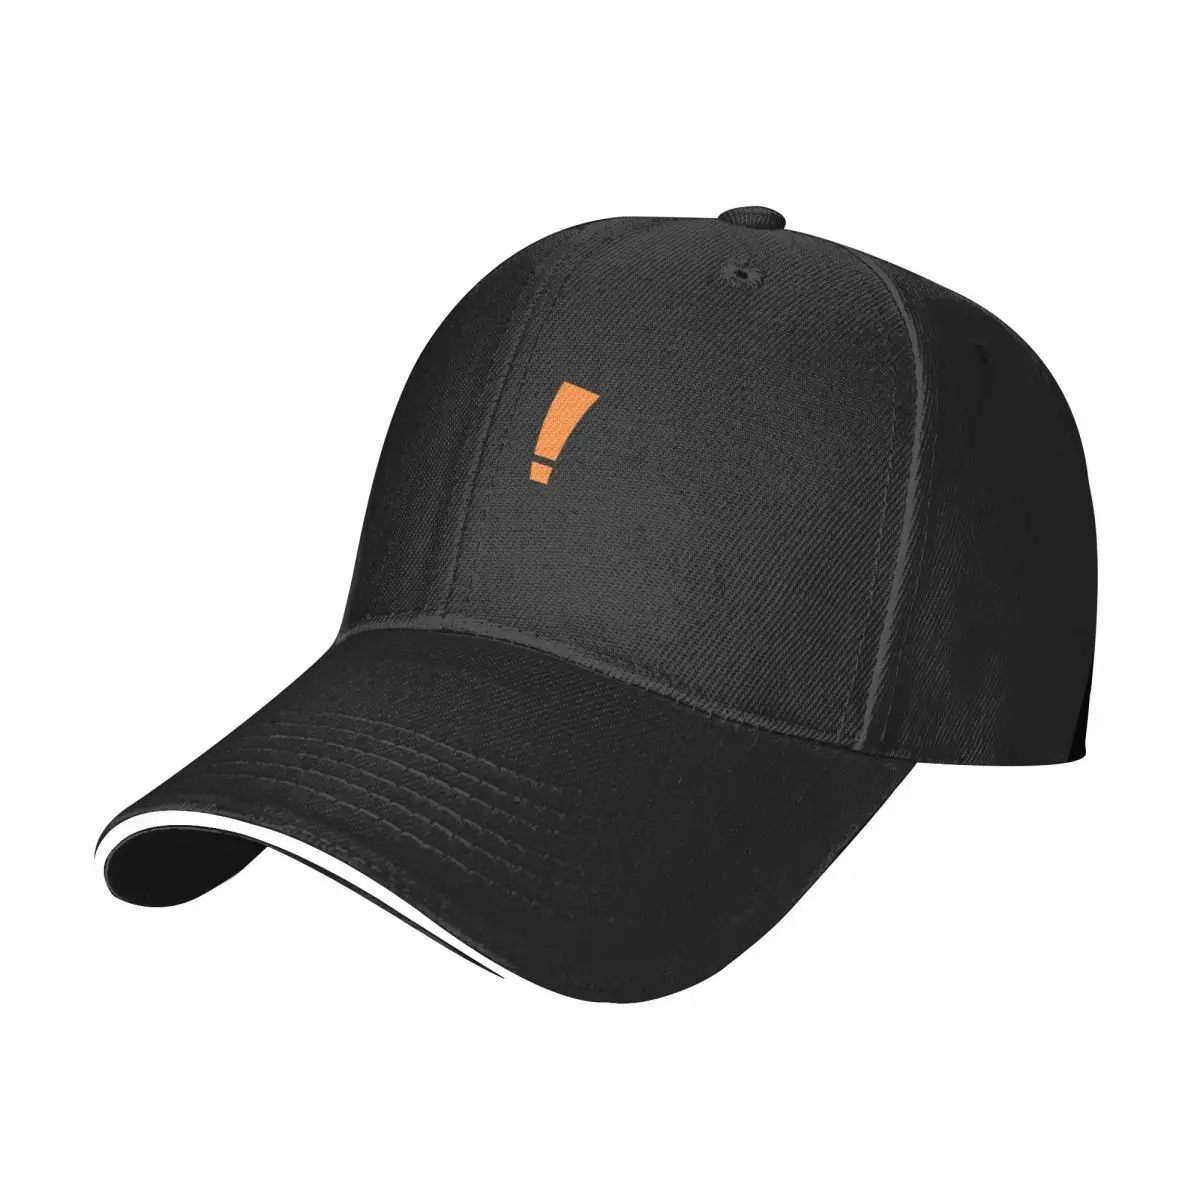 Бестселлер, товары с логотипом big lots, бейсбольная кепка, кепка дальнобойщика, кепка для гольфа, мужская кепка, женская кепка